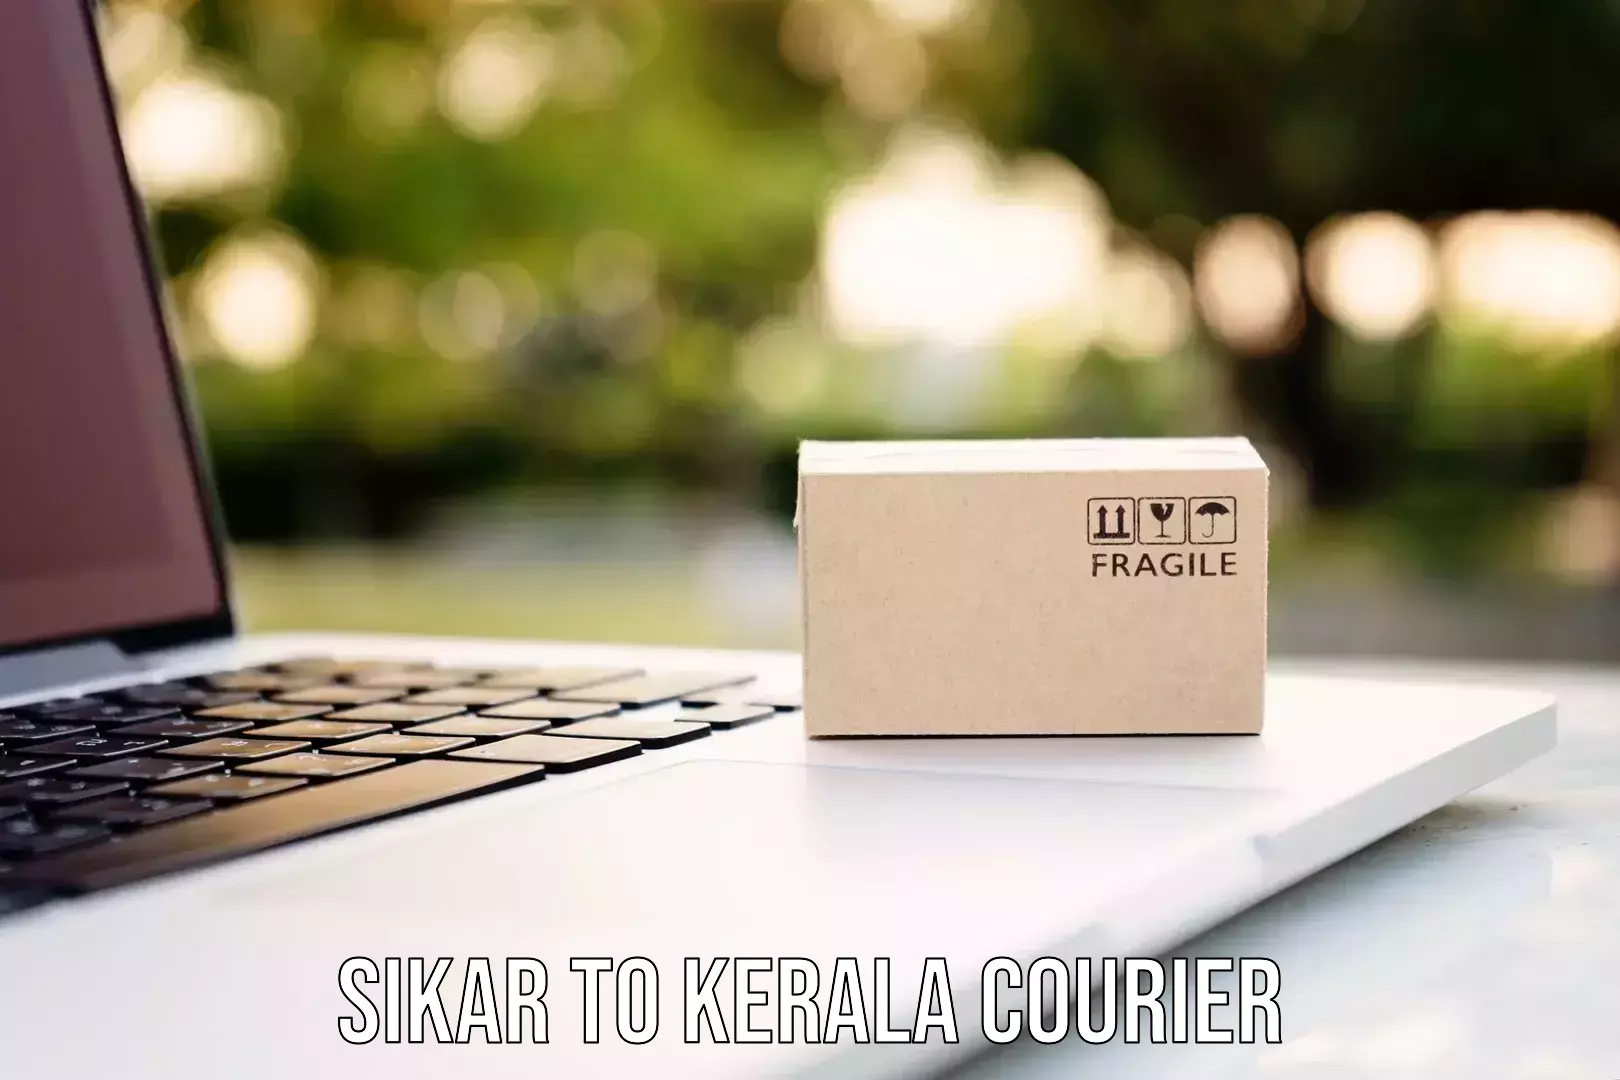 Affordable parcel service Sikar to Mundakayam